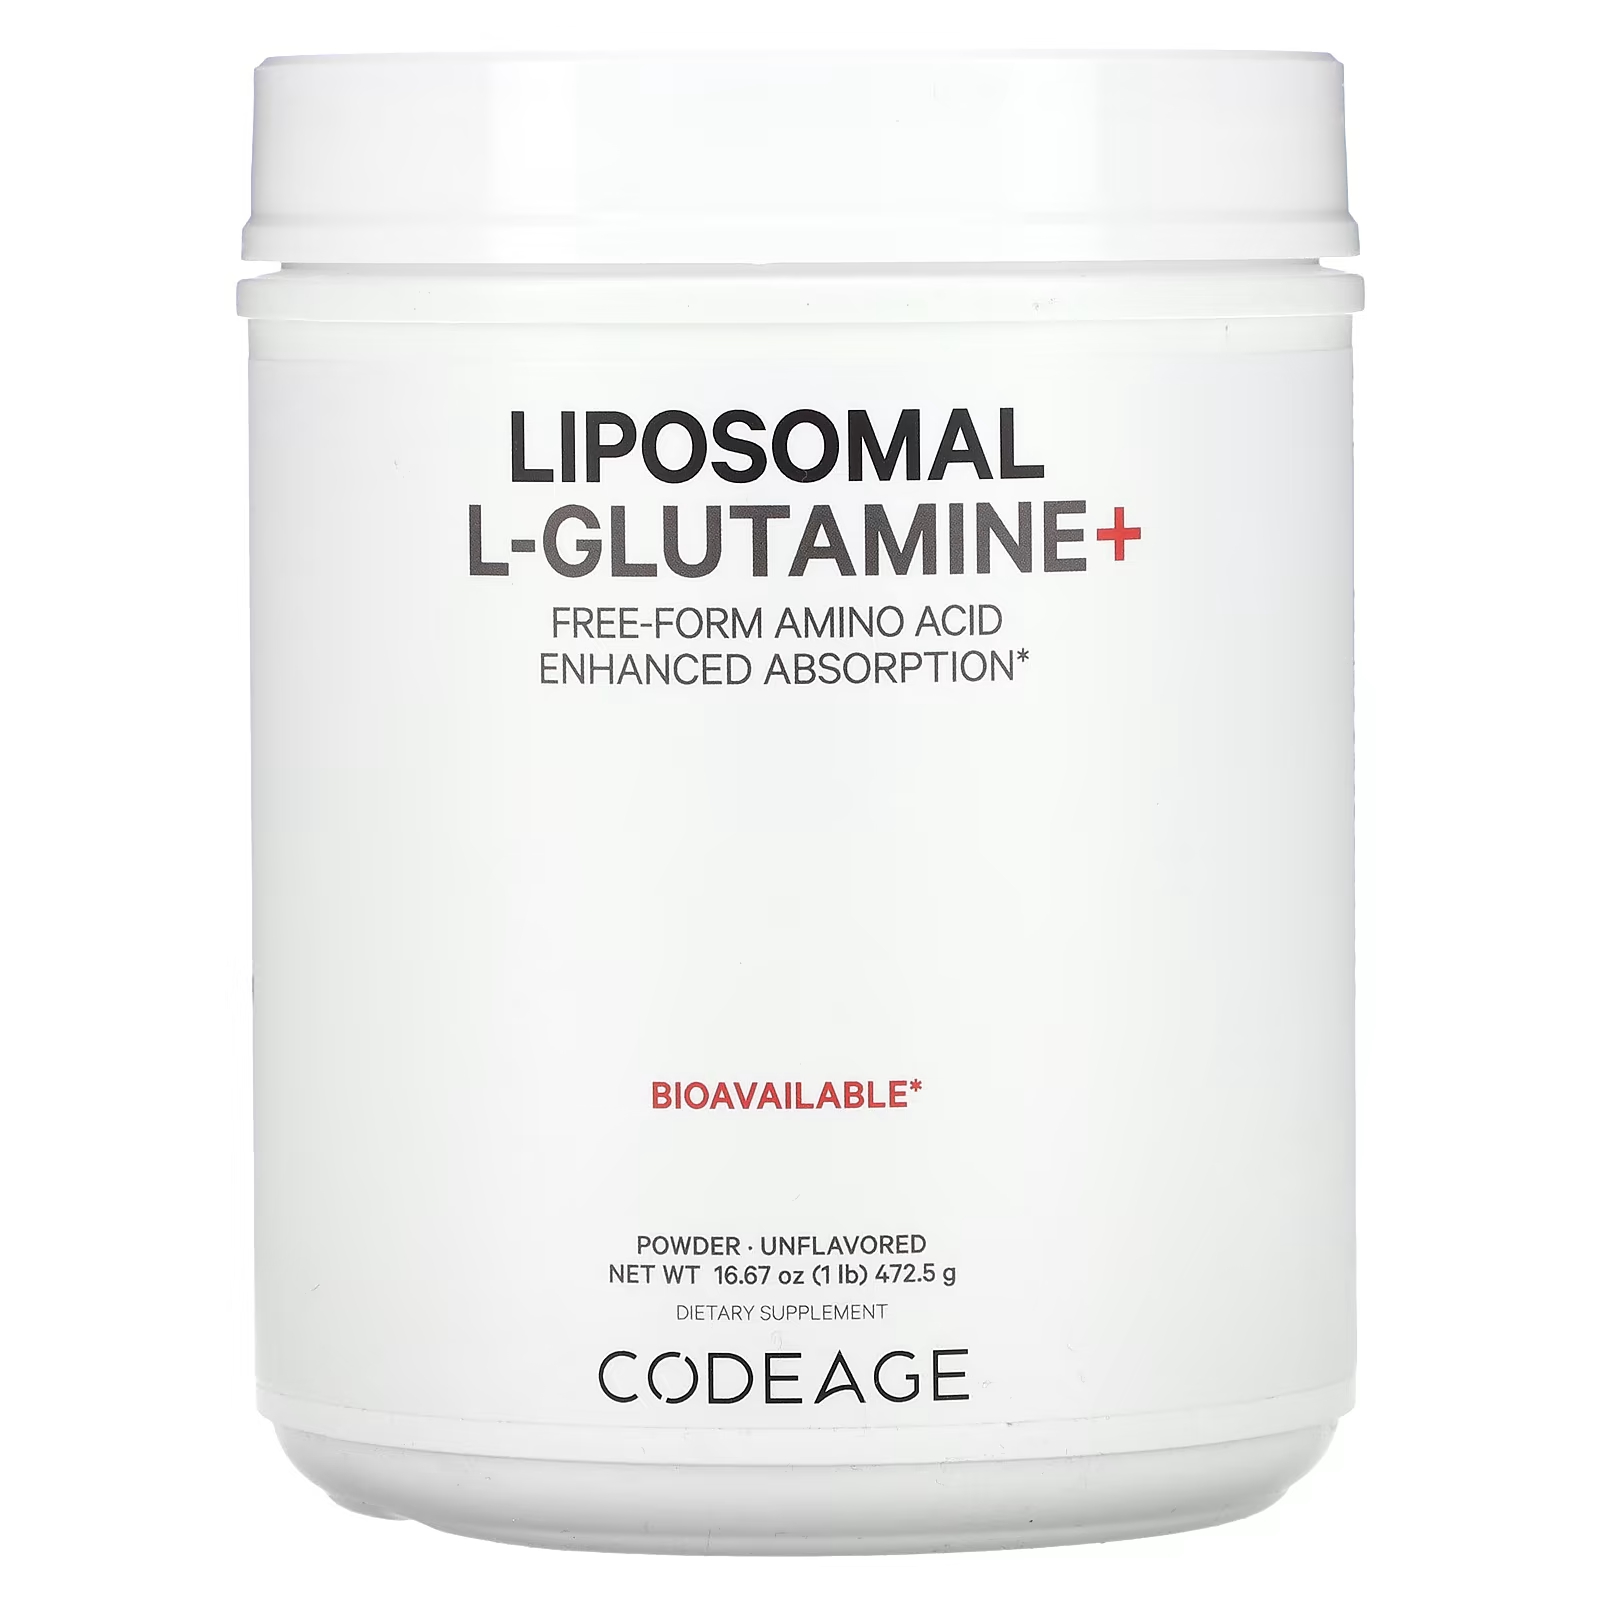 Codeage Липосомальный L-глутамин+ в виде порошка, аминокислоты в свободной форме, улучшенная абсорбция, без вкусовых добавок, 1 фунт (472,5 г)